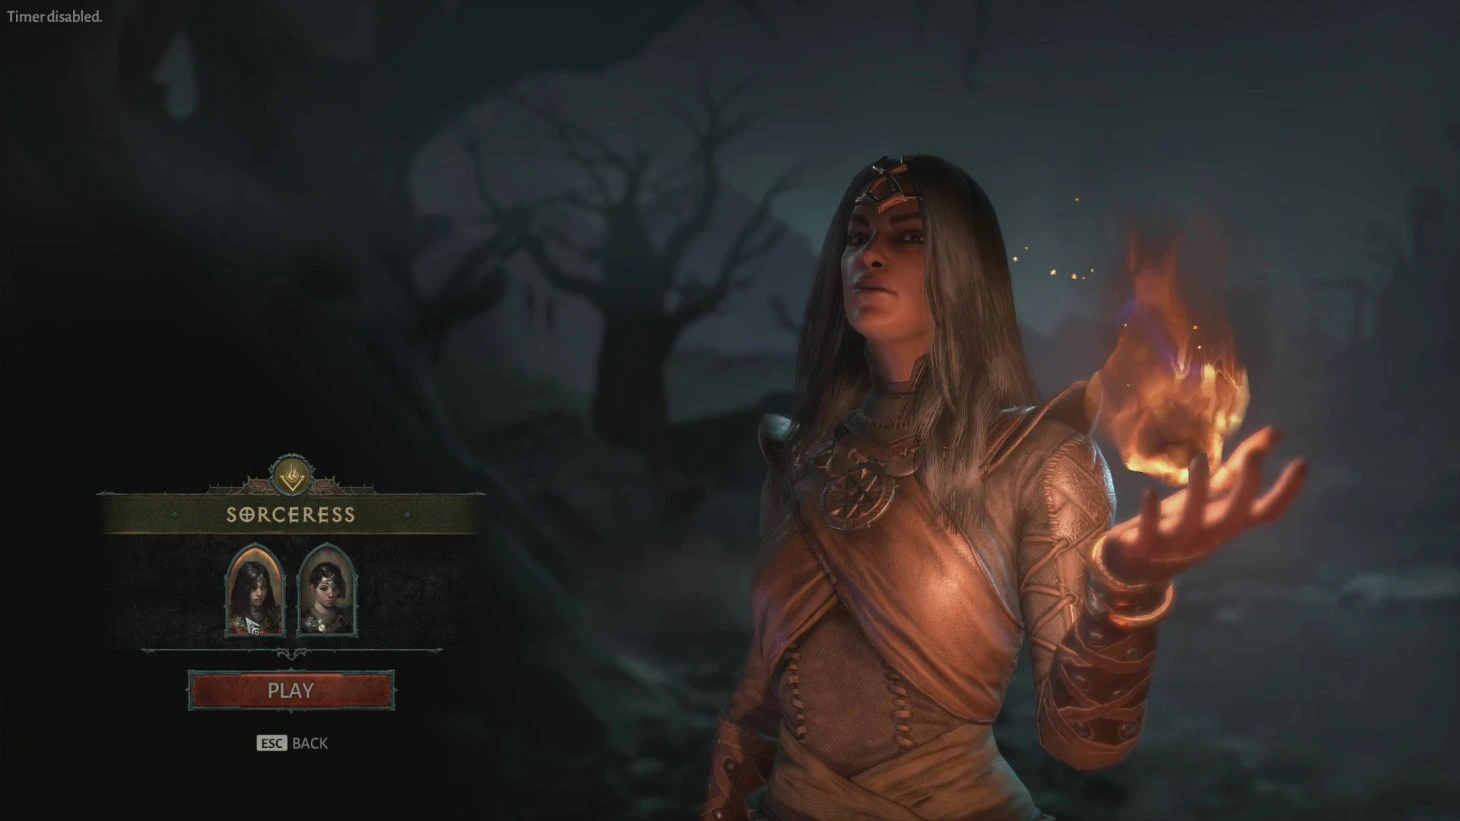 20 phút gameplay của Sorceress, phù thủy tối thượng của Diablo IV